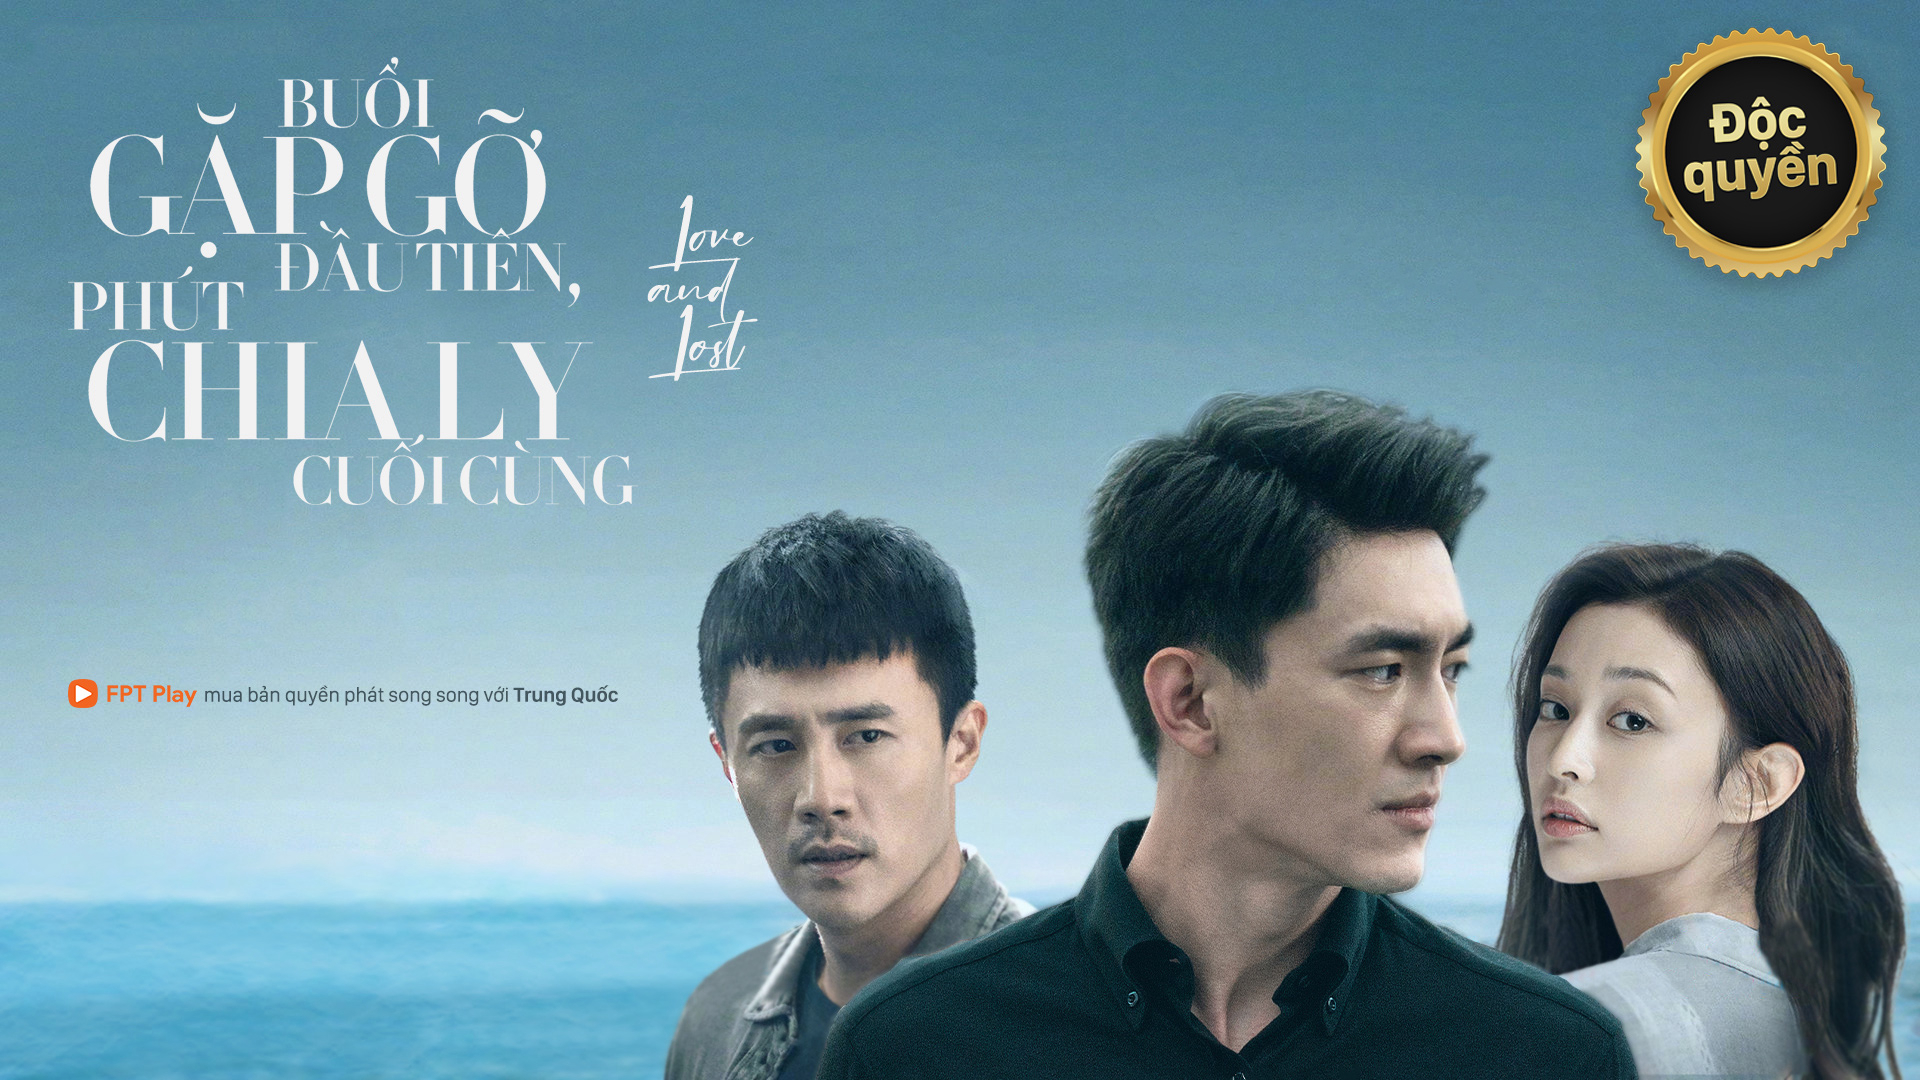 Banner Phim Buổi Gặp Gỡ Đầu Tiên, Phút Chia Ly Cuối Cùng (To Love)